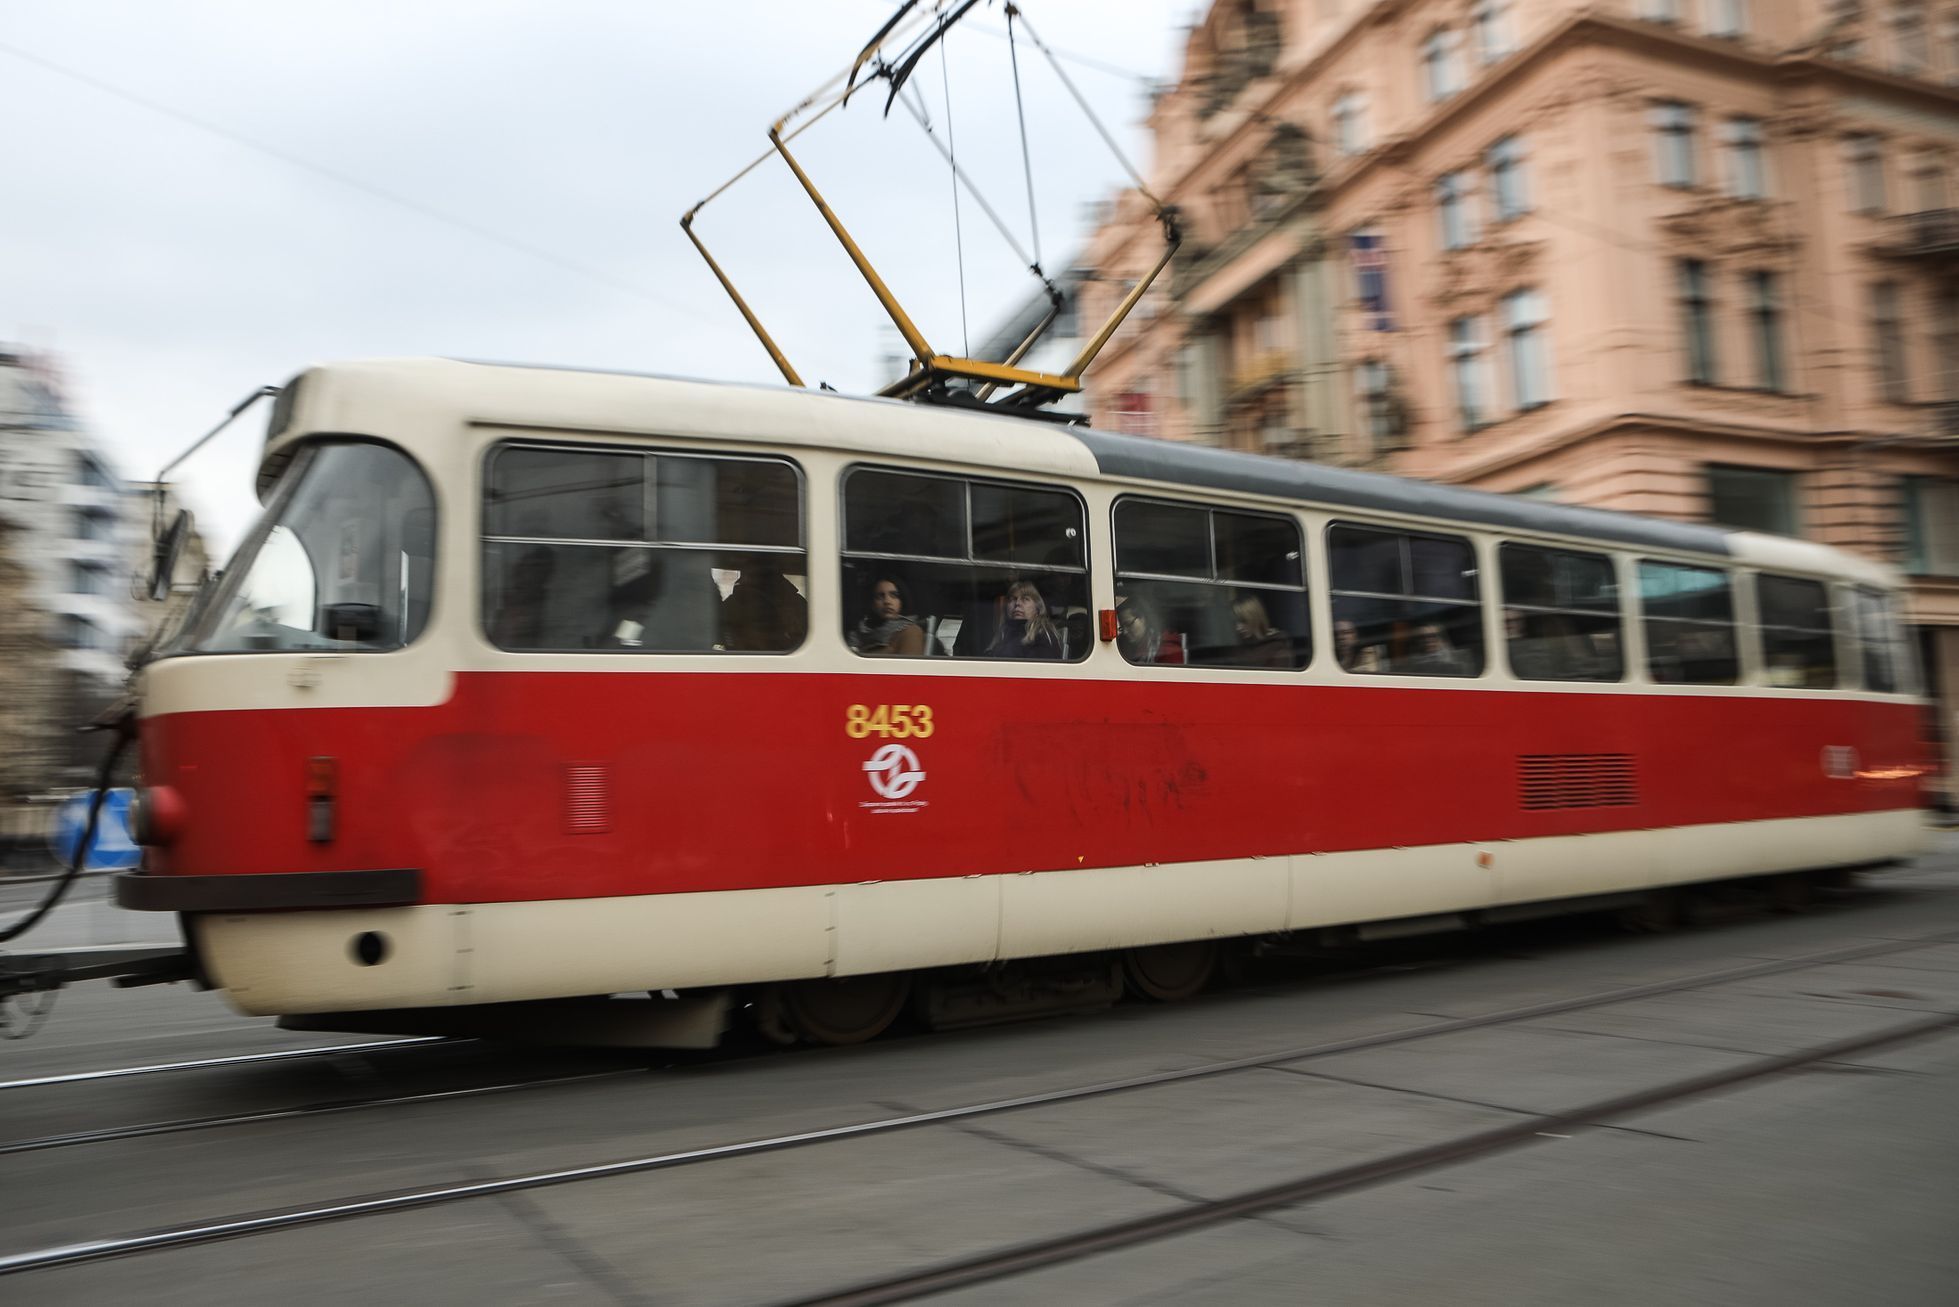 Ilustrační foto - tramvaj, MHD, veřejná doprava, DPP